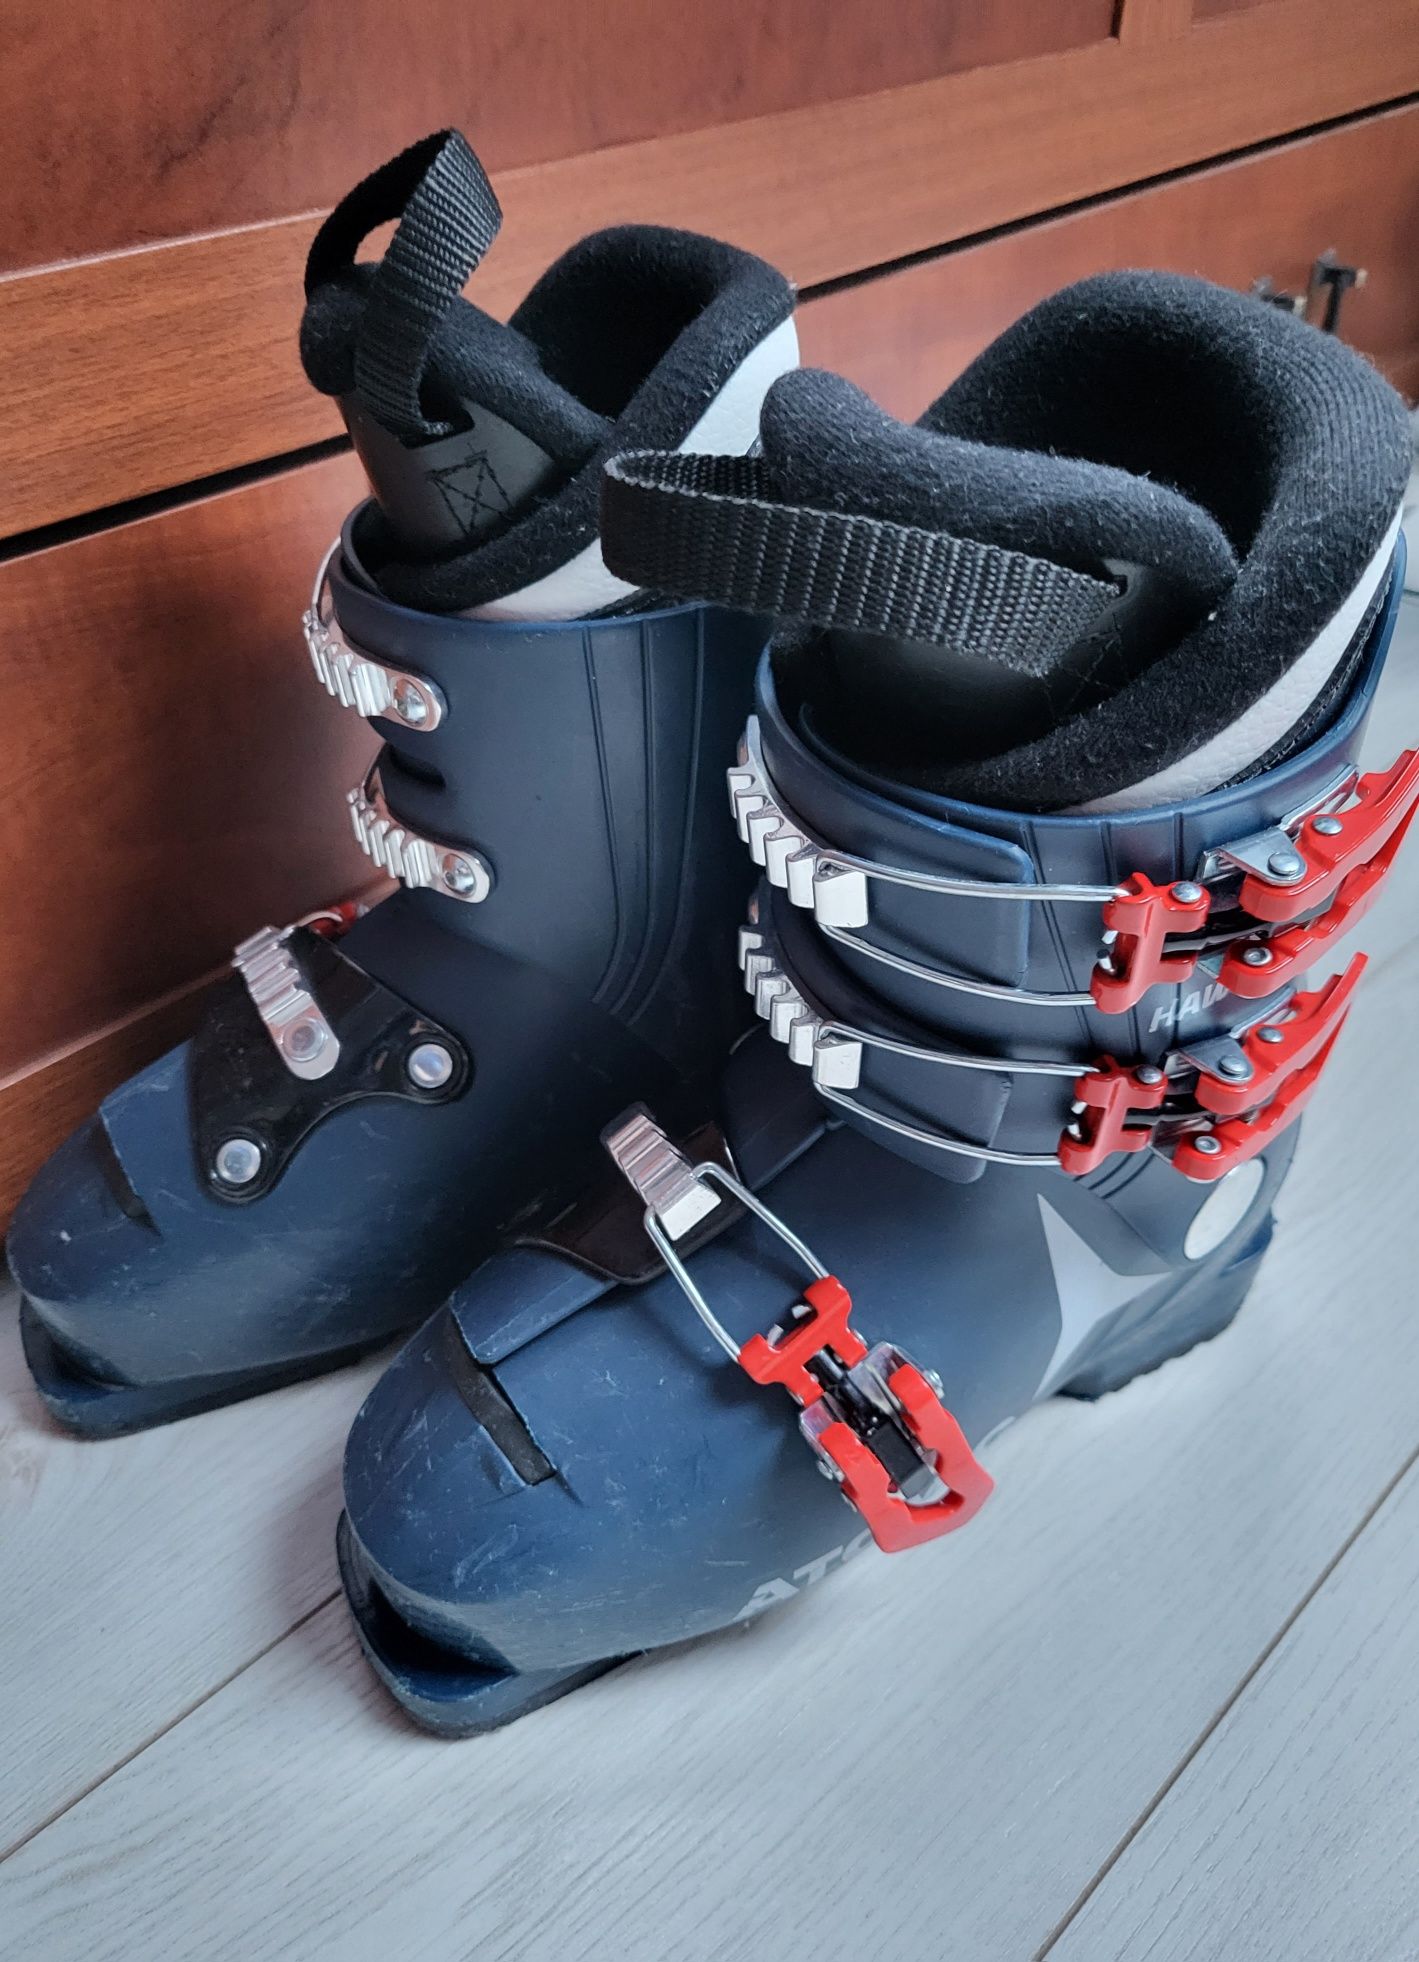 Dziecięce buty narciarskie ATOMIC HAWX JR3 rozm. 33/34 MP 21-21.5 
HAW